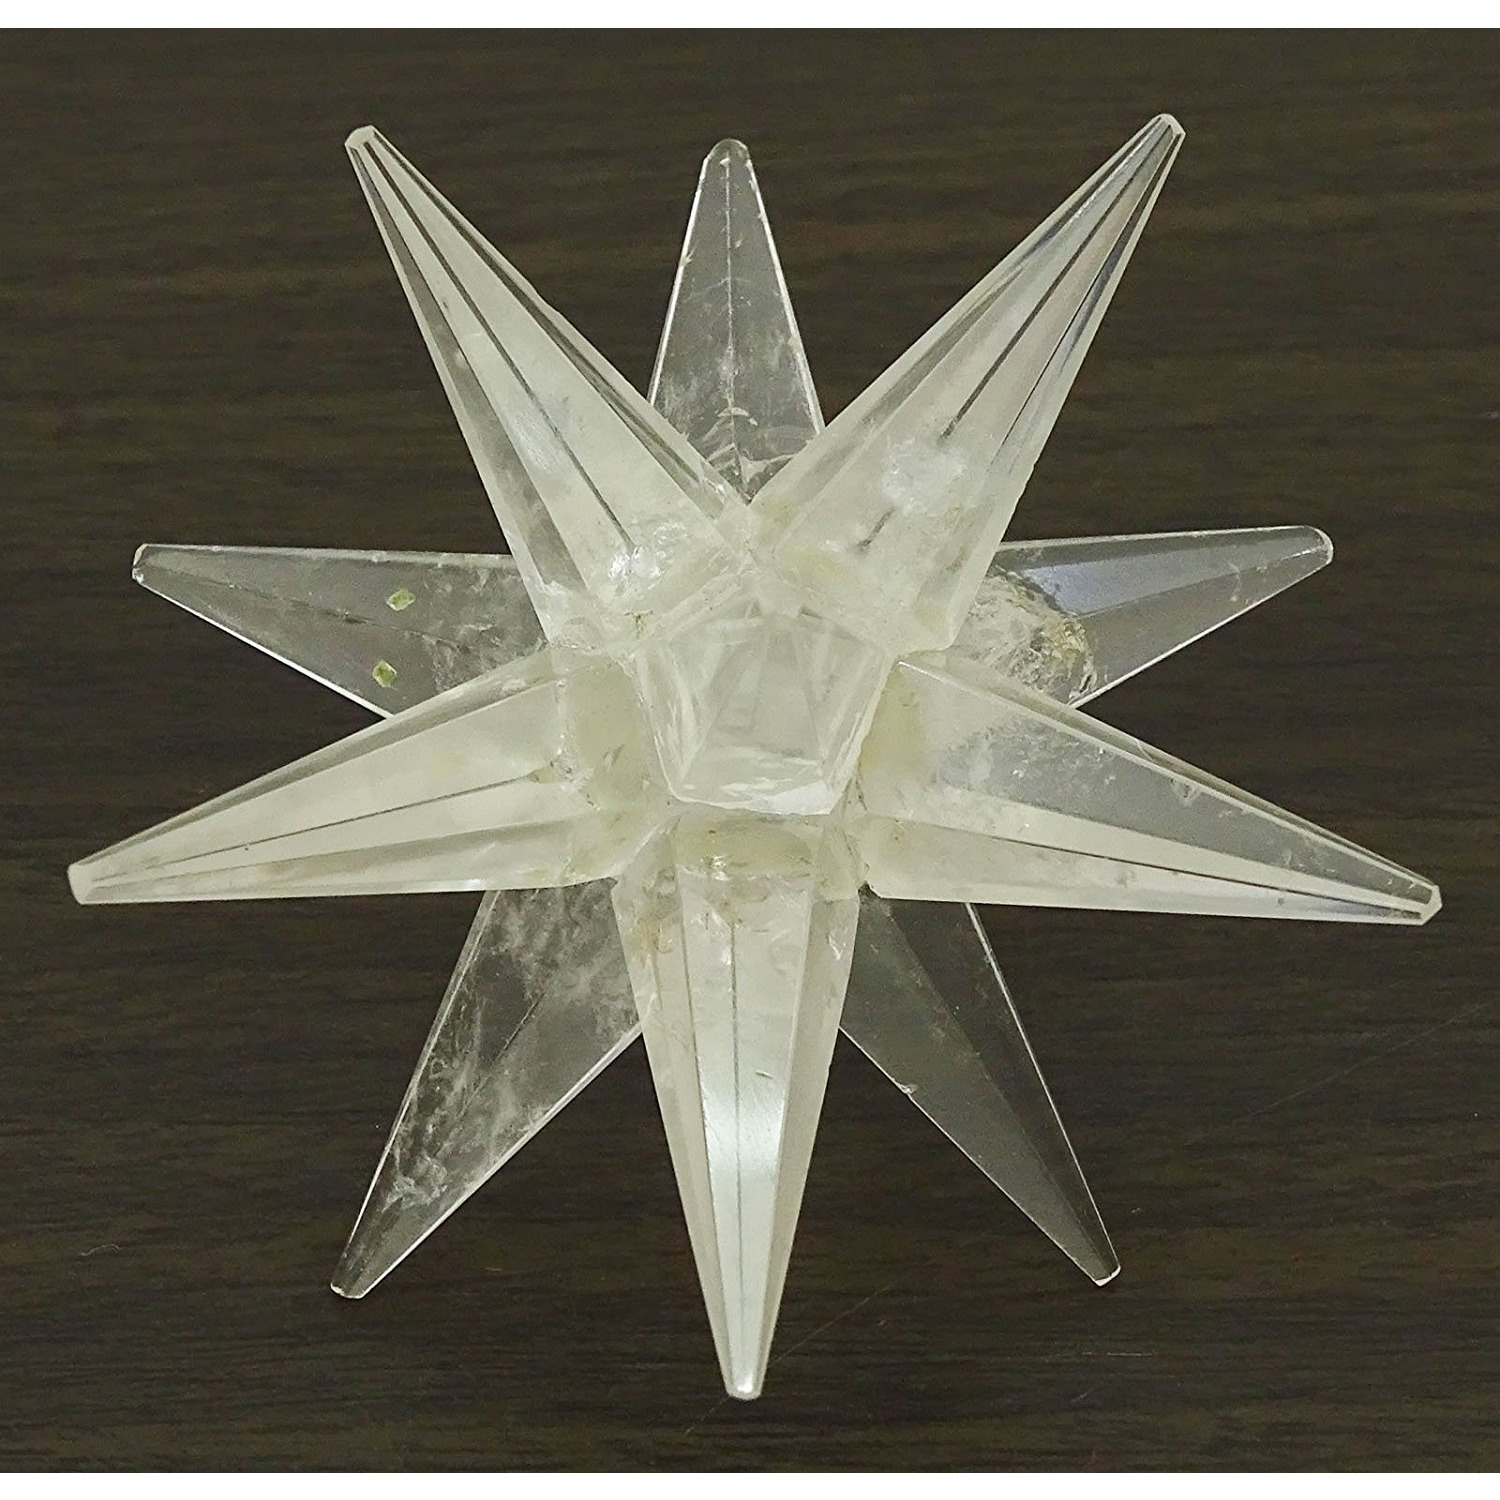 Winmaarc Reiki Healing Crystal Energy Generator 12 Point Star Merkaba Sacred Geometry